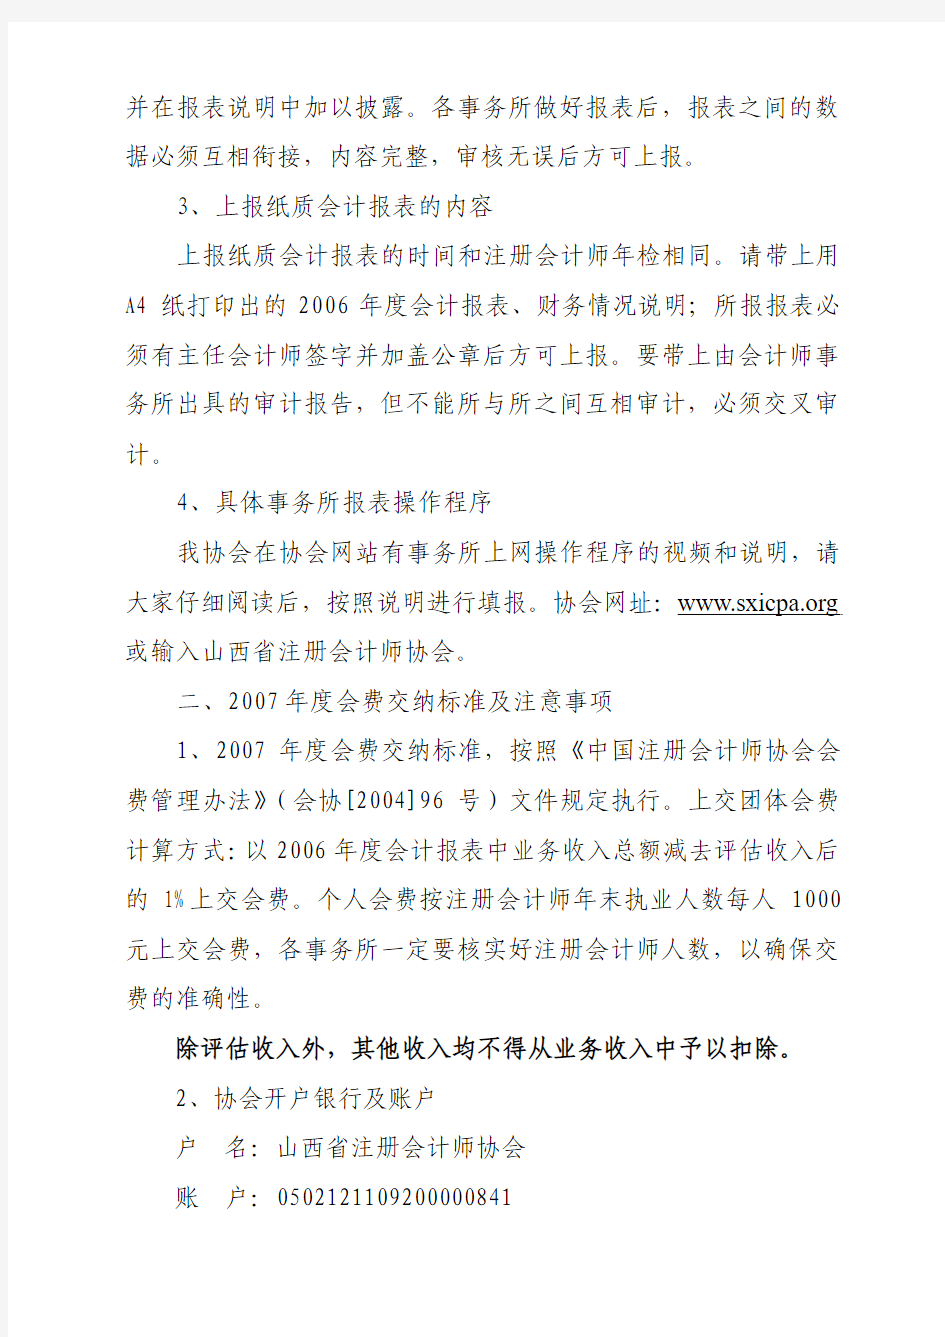 根据《中国注册会计师协会会费管理办法》(会协[2004]96号)及